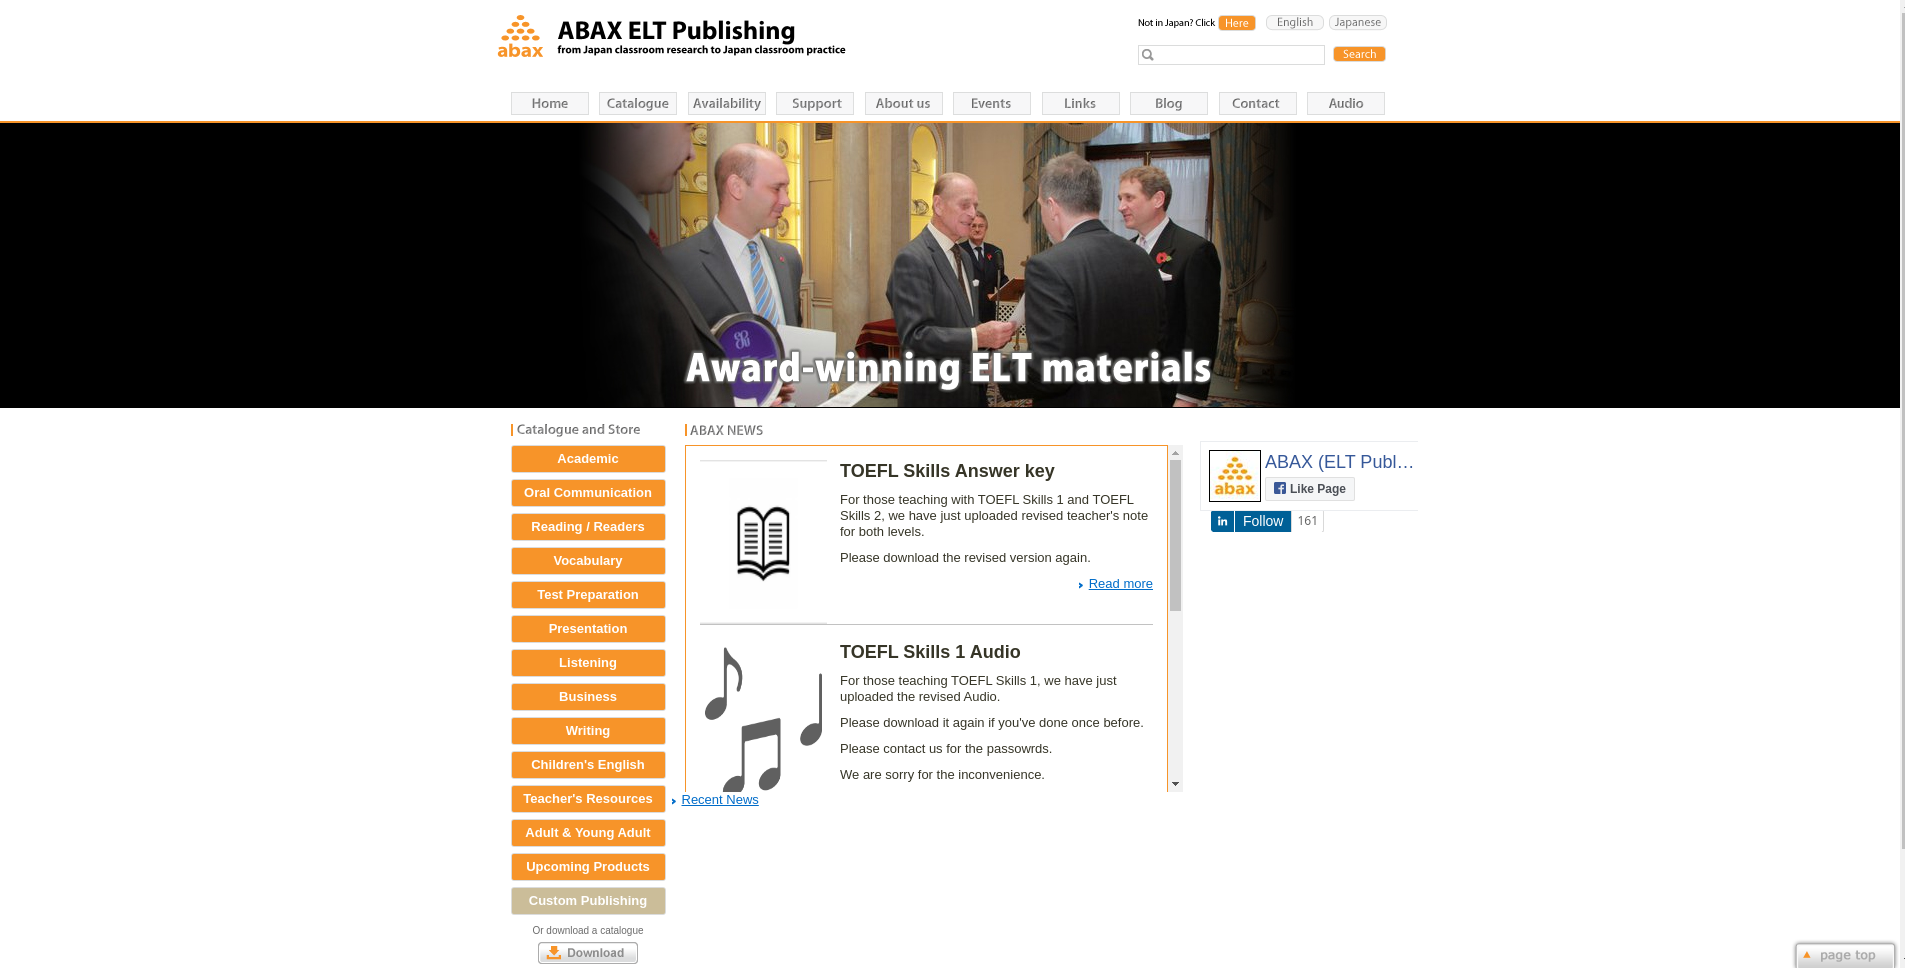 Abax ELT Publishing